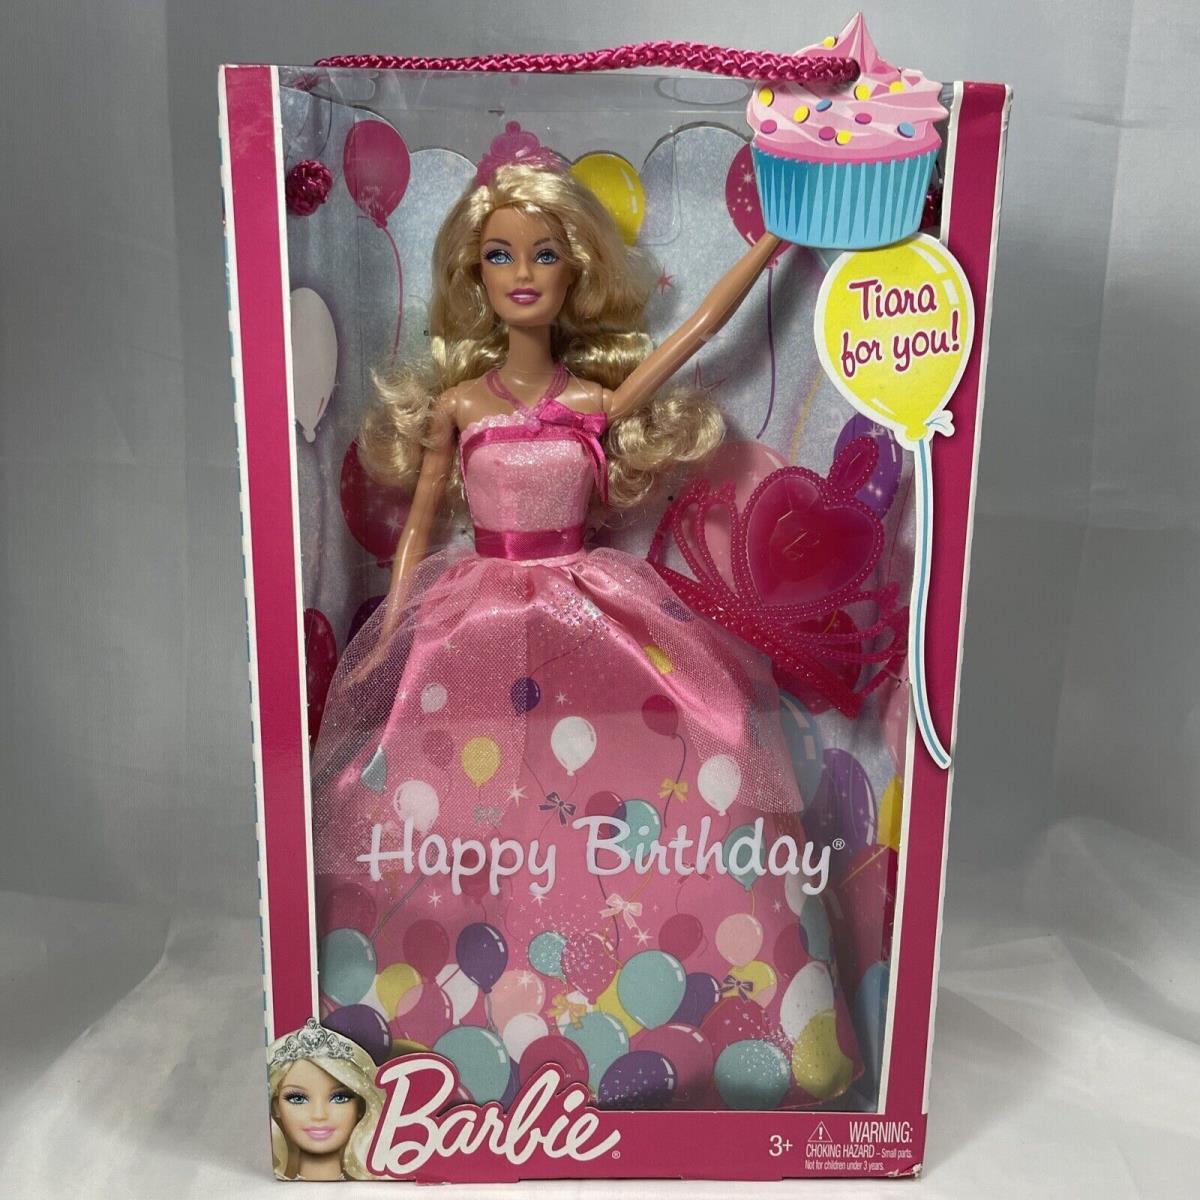 Mattel 2011 Happy Birthday Tiara Barbie Doll Tiara Included W2862